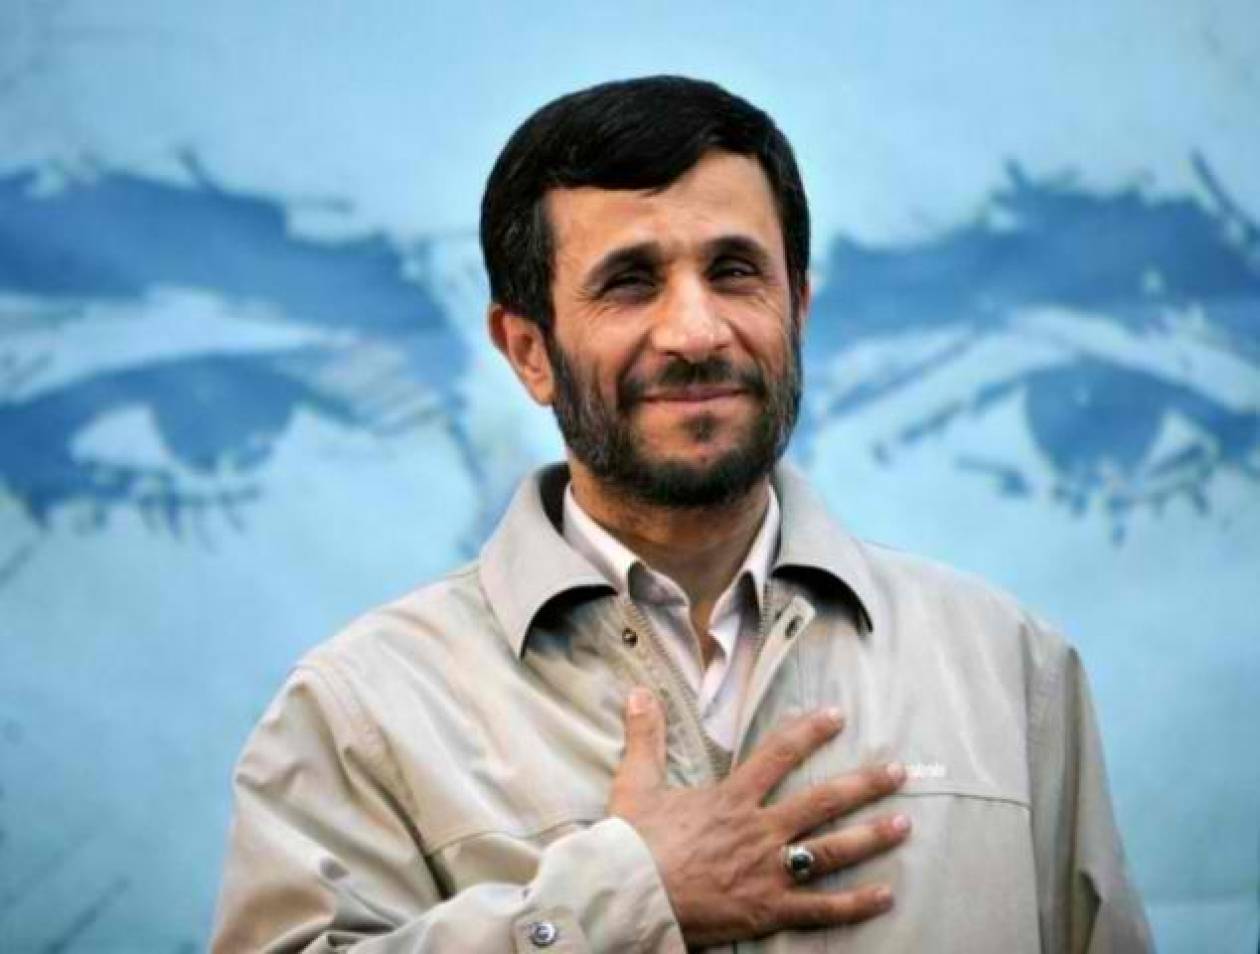 Μ. Αχμαντινεζάντ: Το 2013 αποσύρομαι από την πολιτική